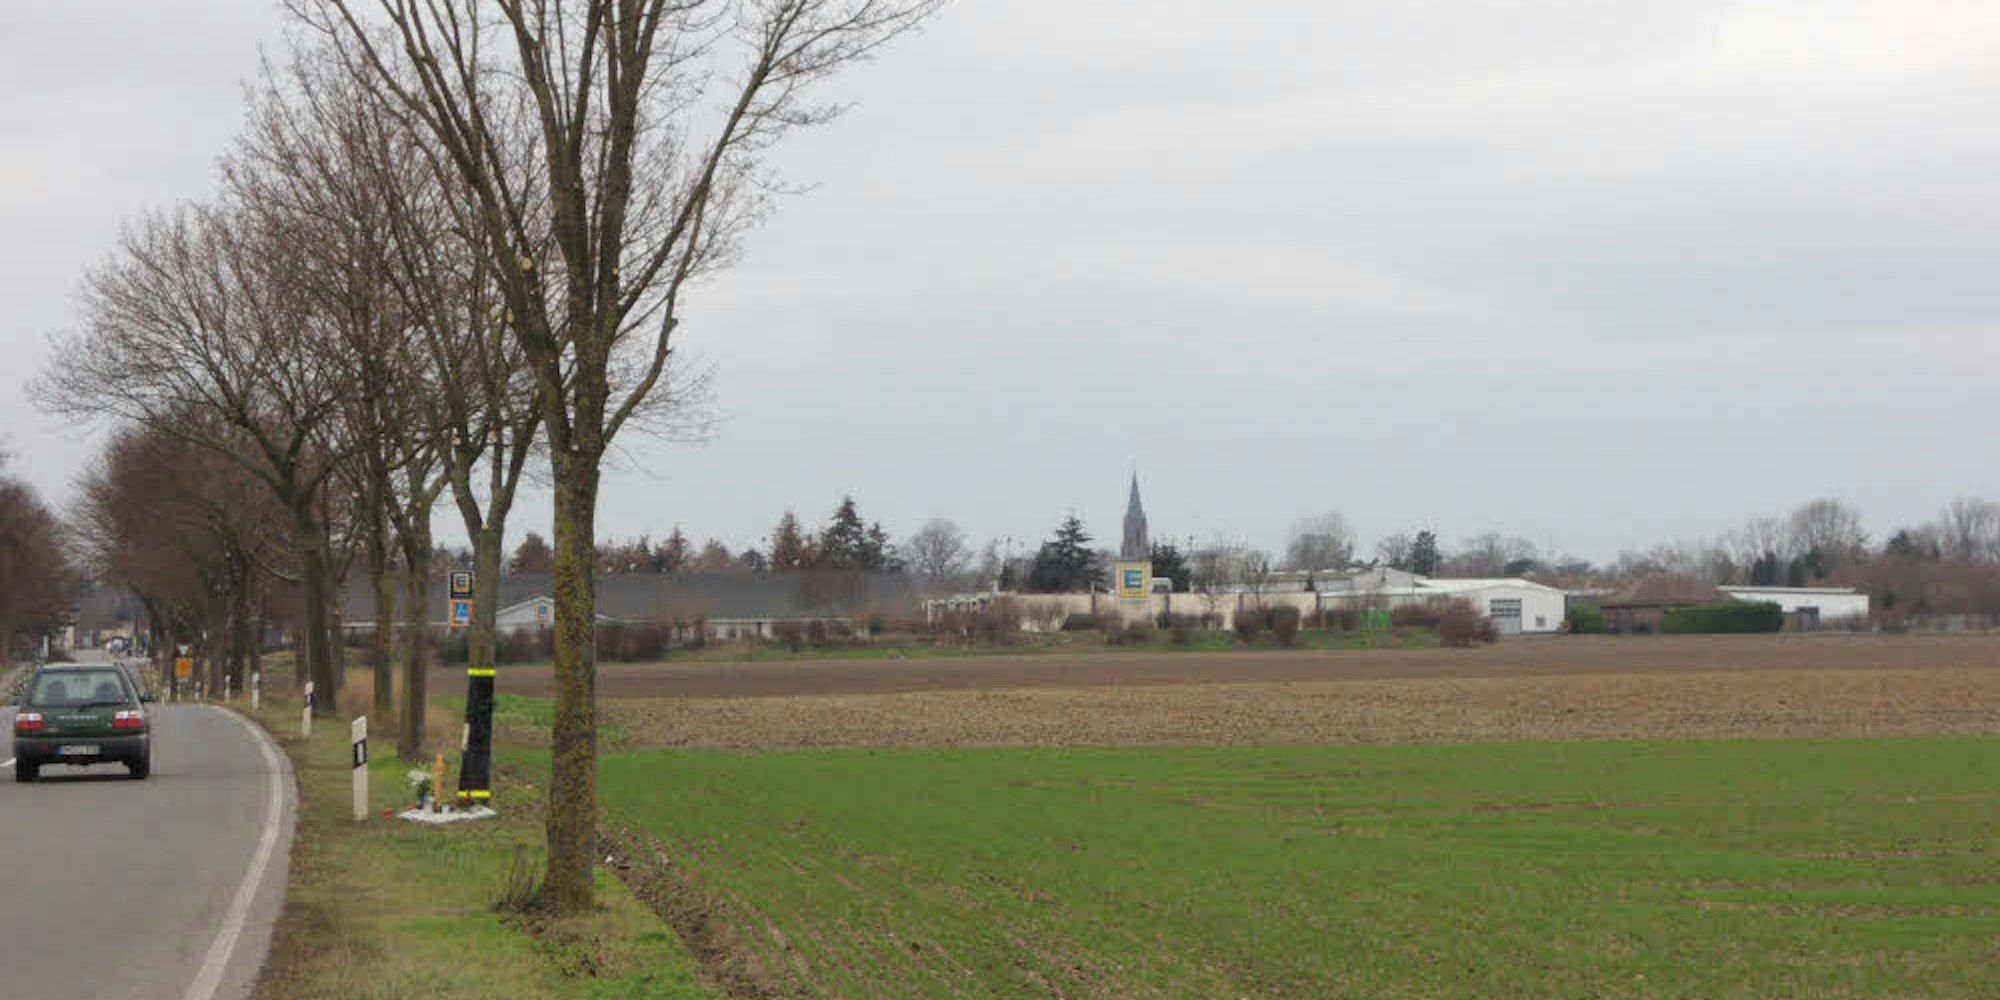 Wenn man von Blatzheim aus auf Buir zufährt, liegt das geplante Gewerbegebiet rechts neben dem Einkaufszentrum.